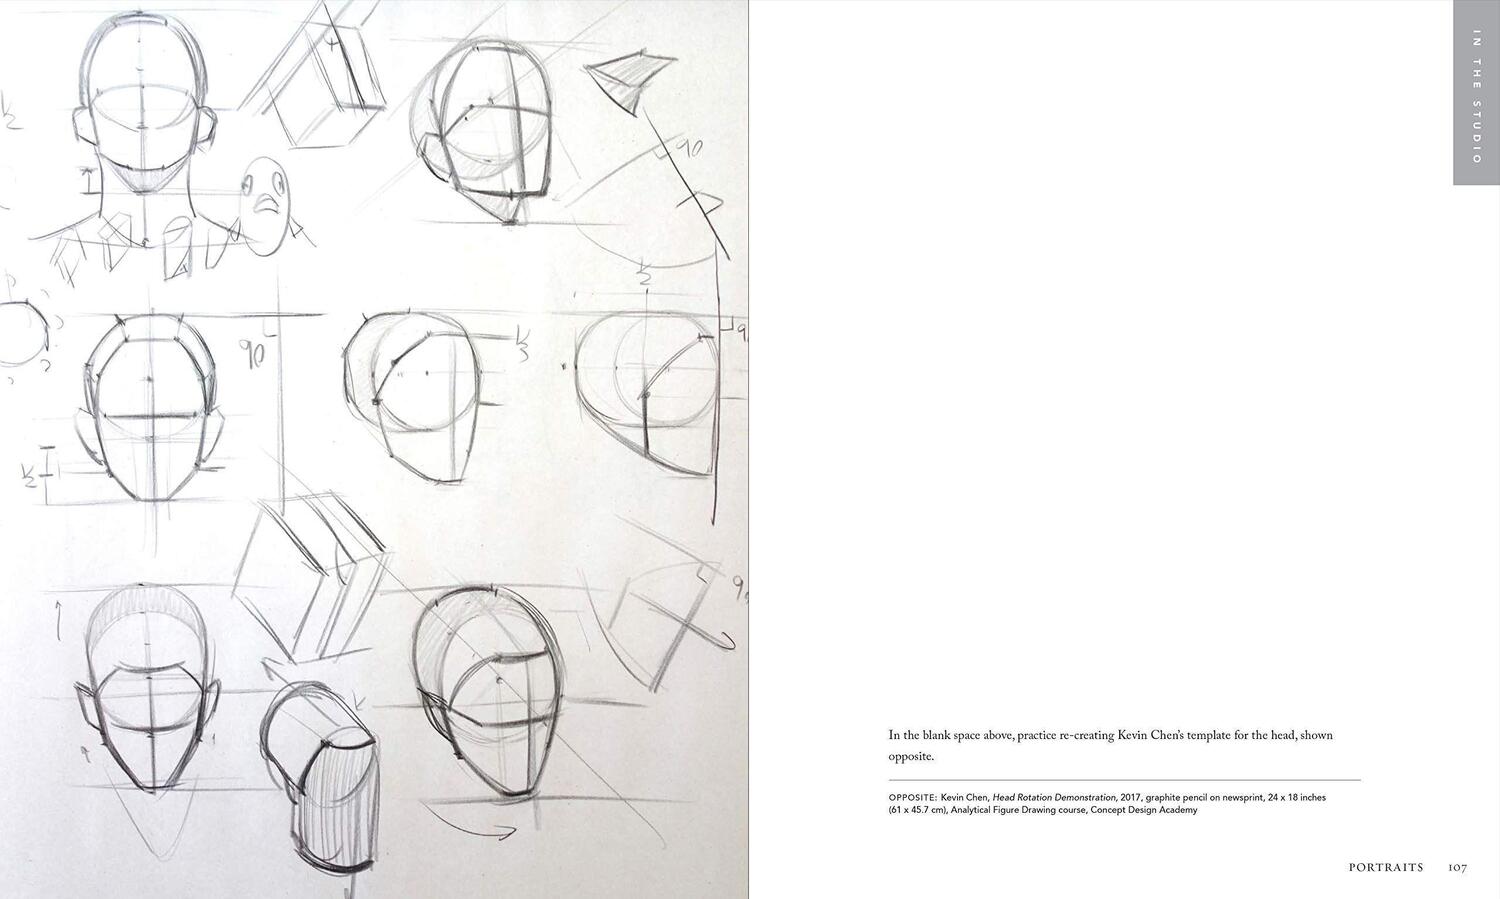 Bild: 9781580935128 | Beginning Drawing Atelier | An Instructional Sketchbook | Aristides